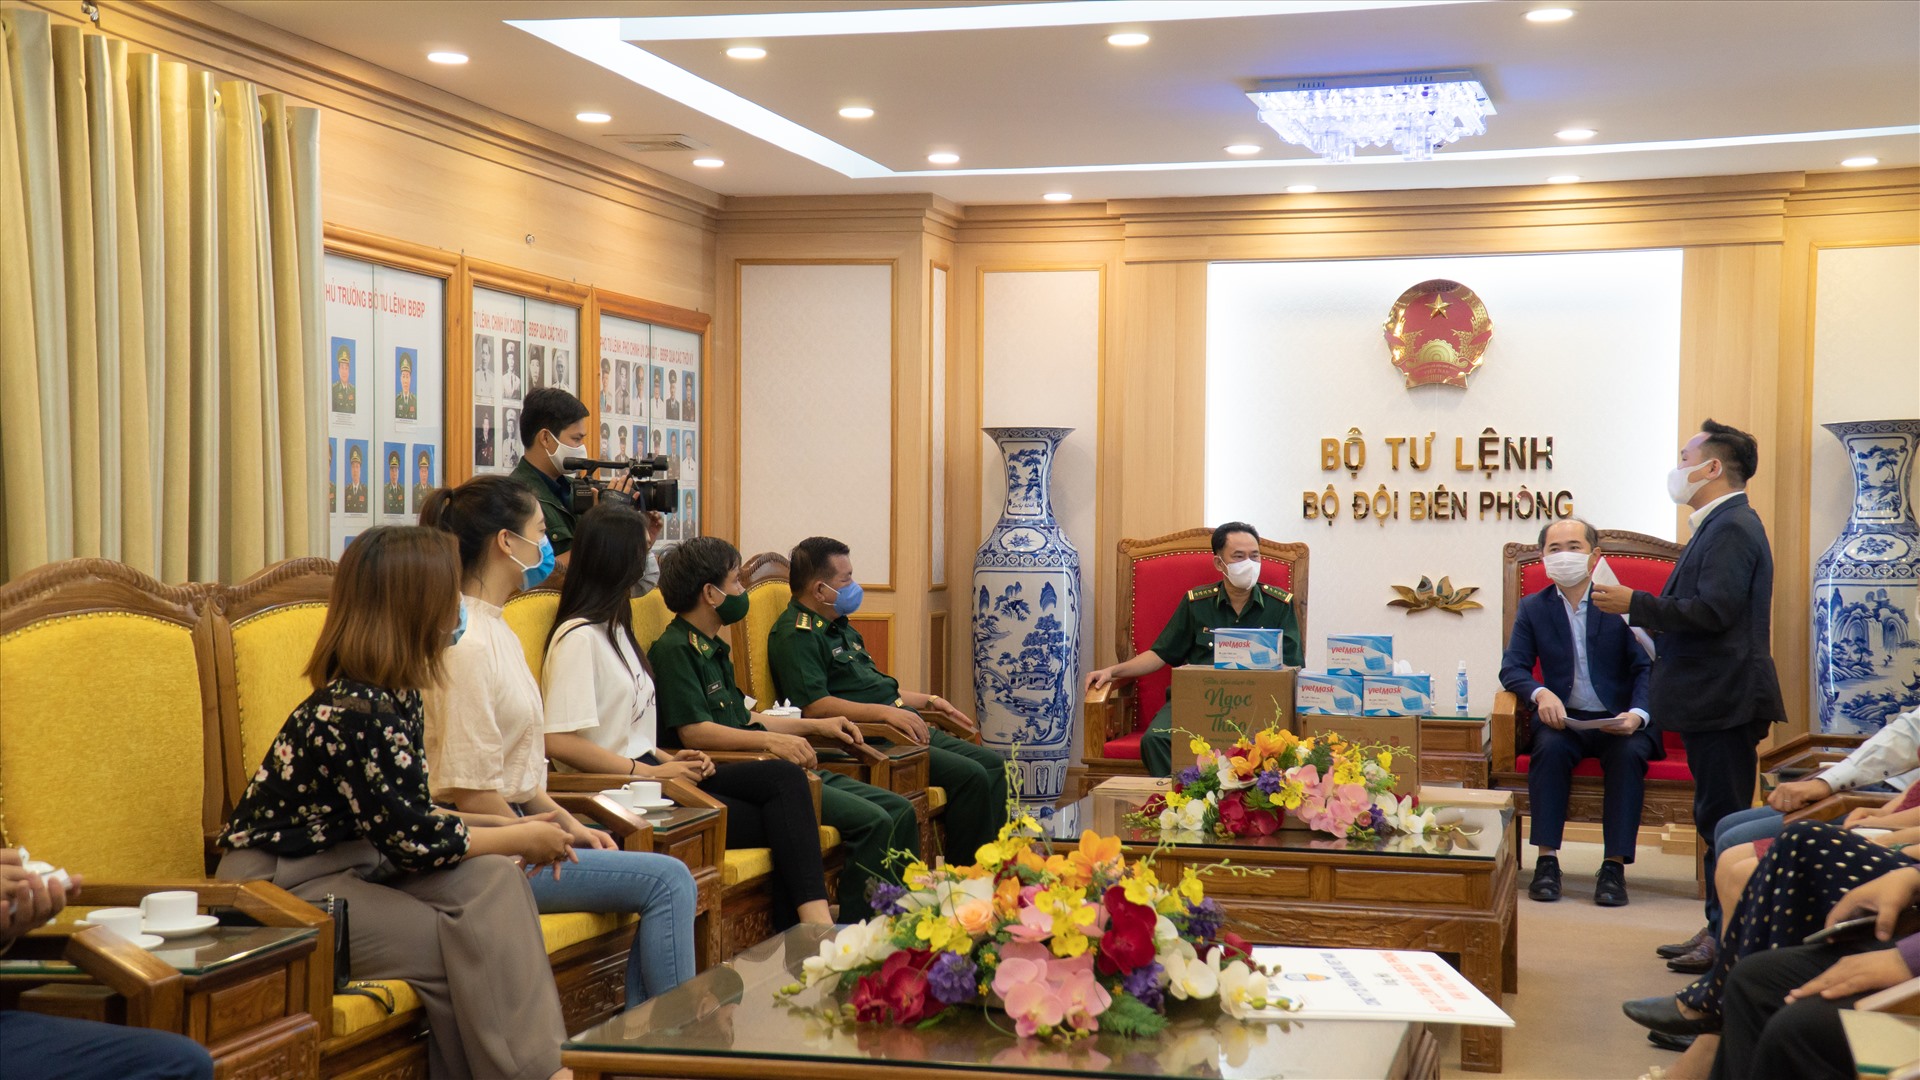 Hoa hậu Tiểu Vy và Lương Thuỳ Linh cùng đồng hành tặng thiết bị y tế cho các chiến sĩ biên phòng. Ảnh: Sen vàng.